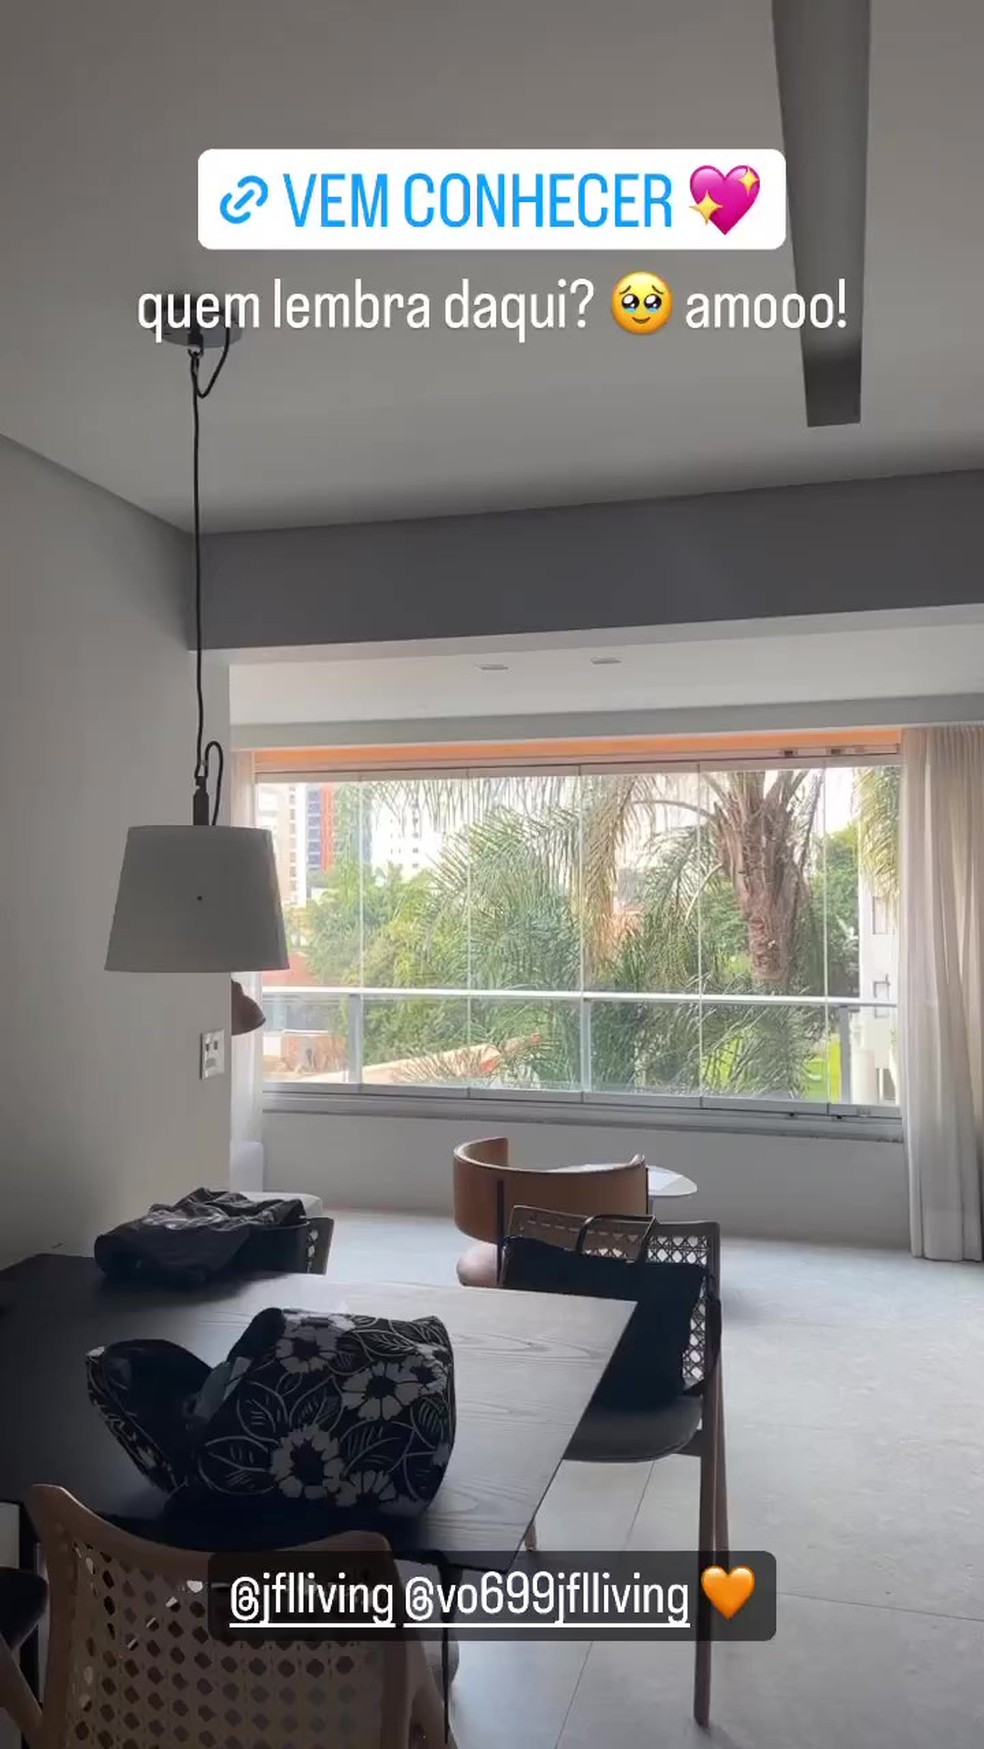 Jade Picon em apartamento no estilo "long stay" — Foto: Reprodução/Instagram